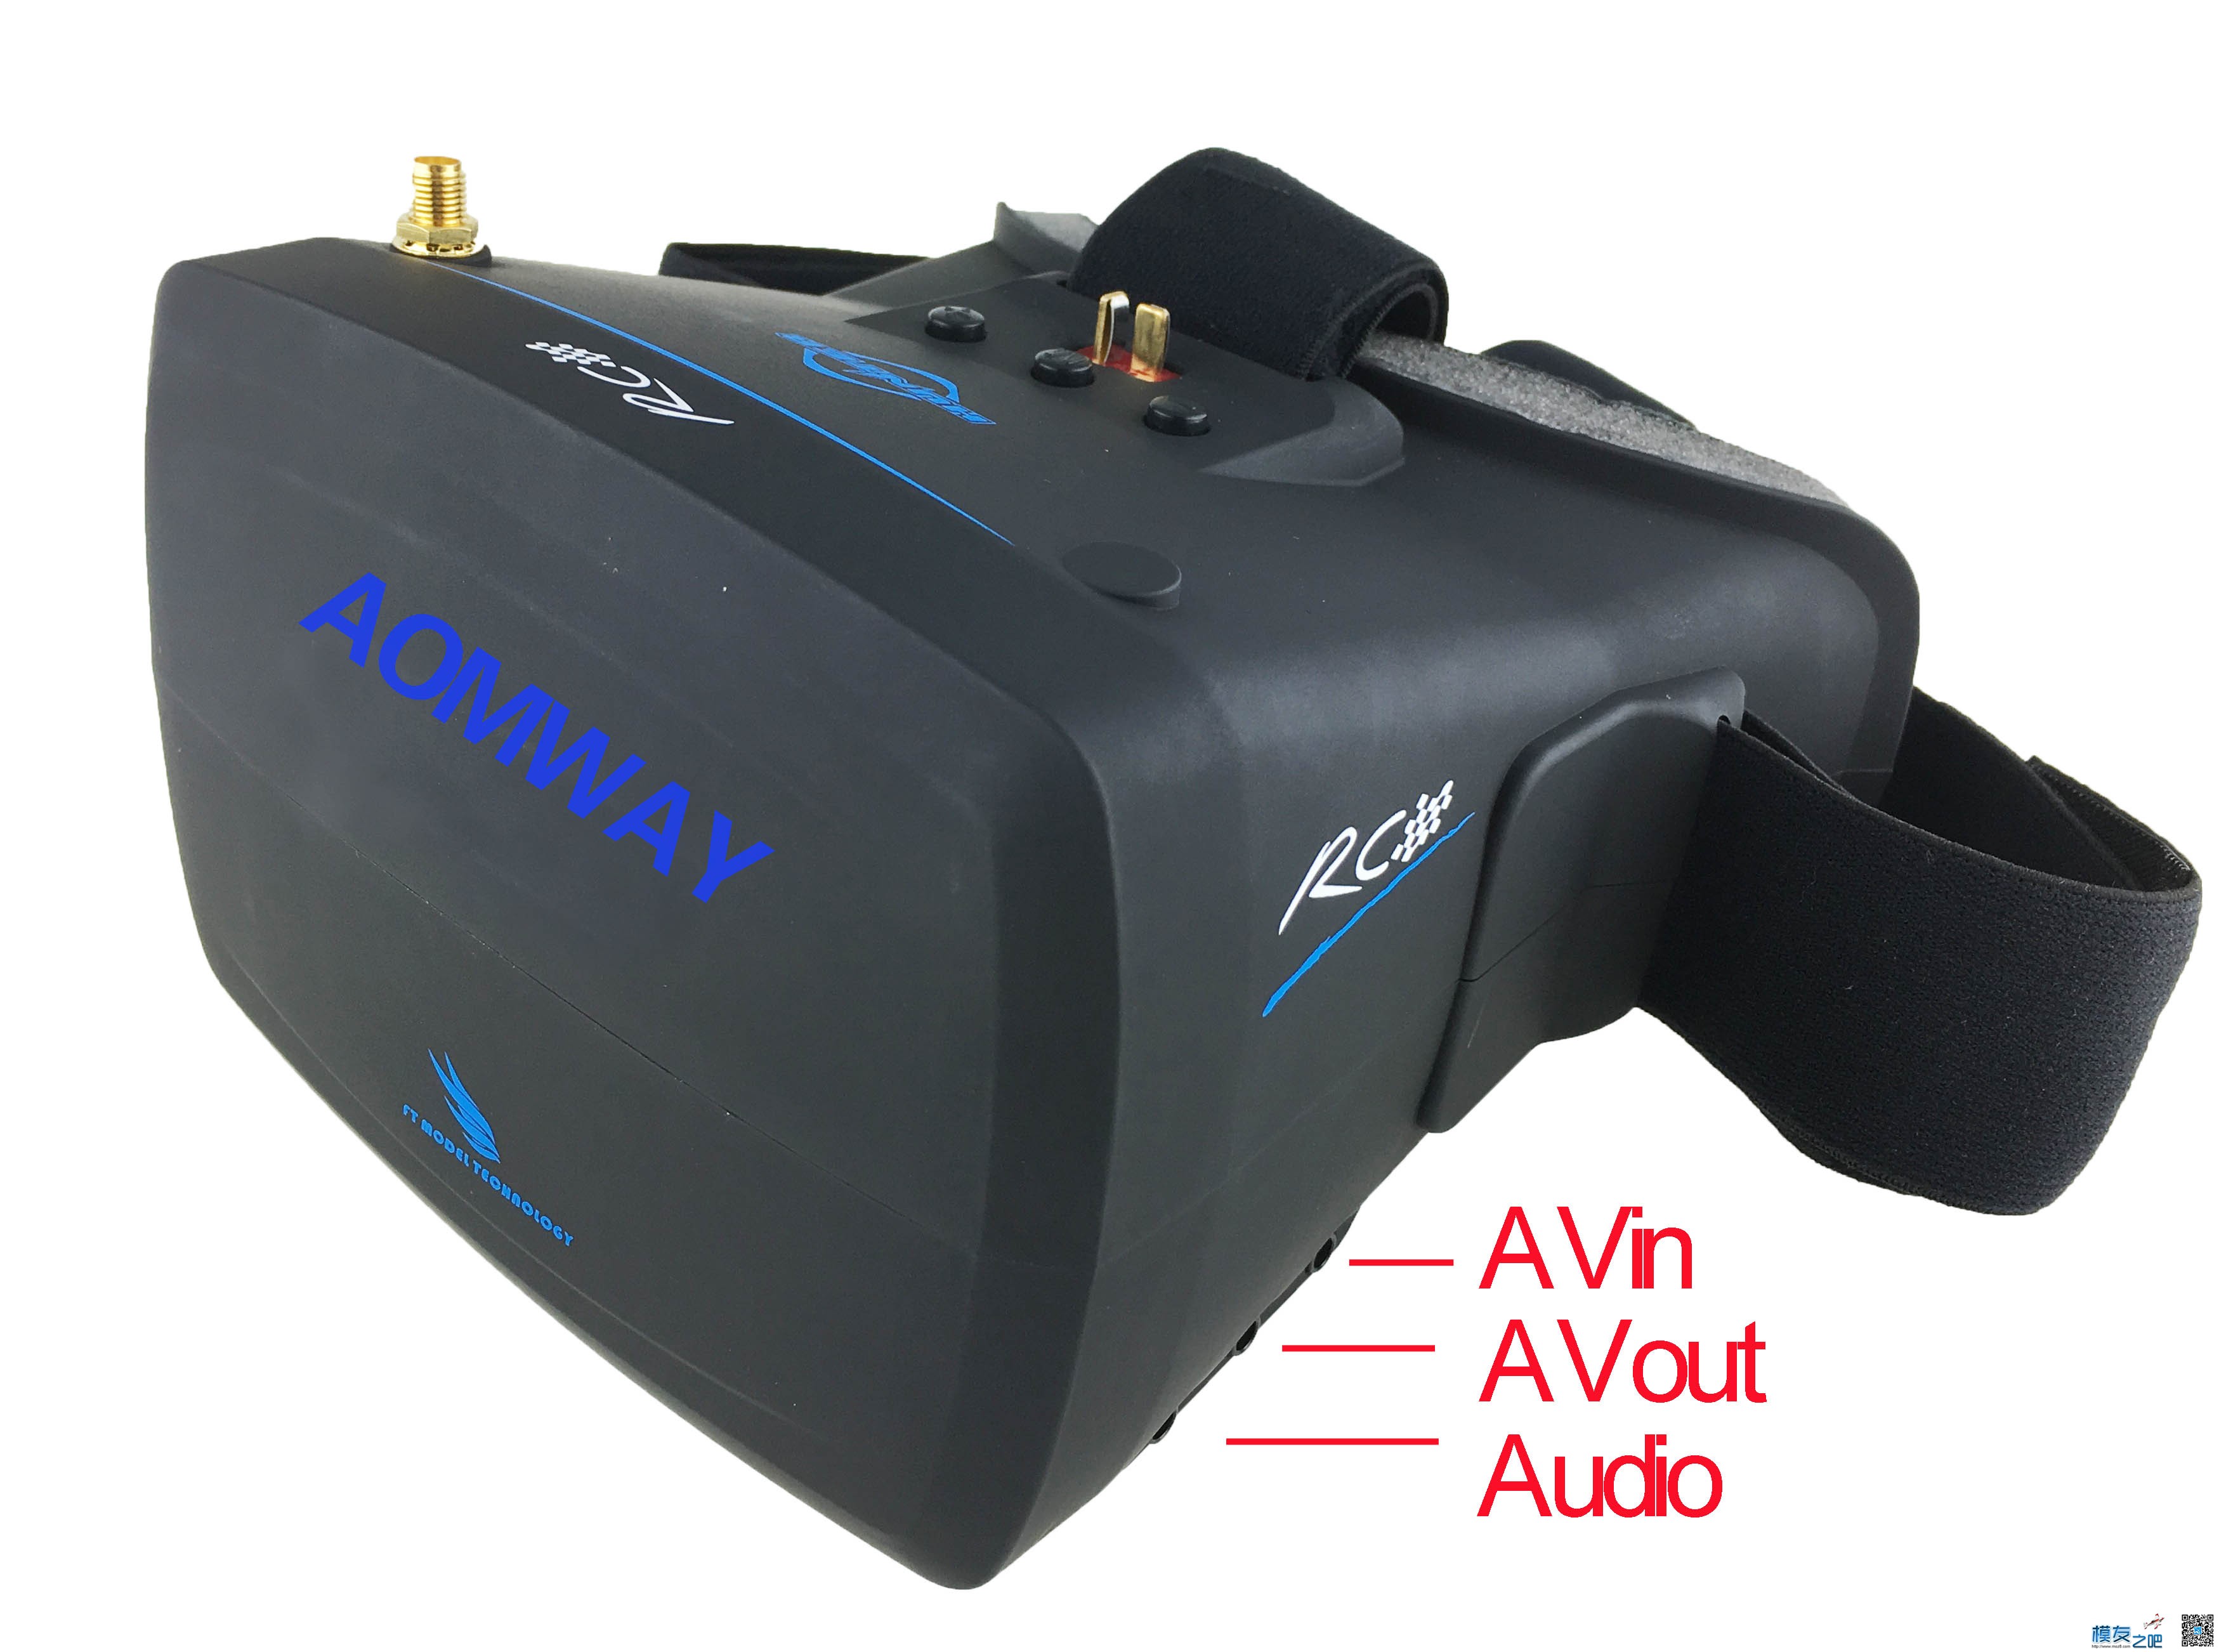 【模友之吧】AOMWAY VR Goggles V1 视频眼镜测试团购活动！ 电池,天线,图传,接收机,论坛活动 作者:飞天狼 3451 